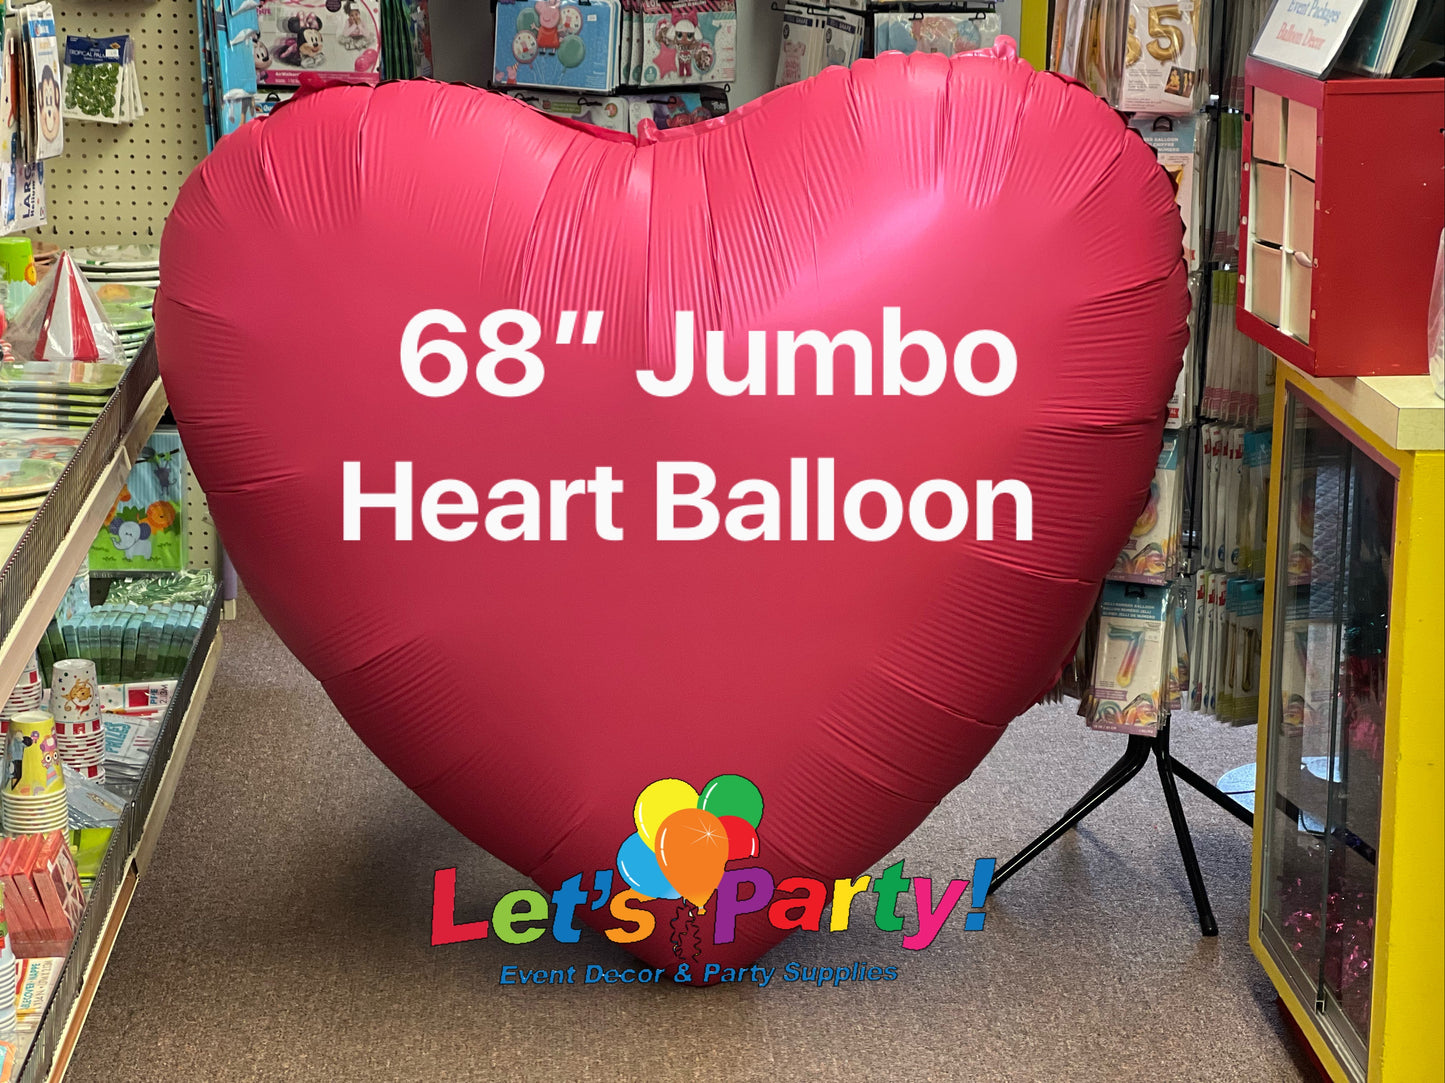 68" JUMBO Heart Balloon